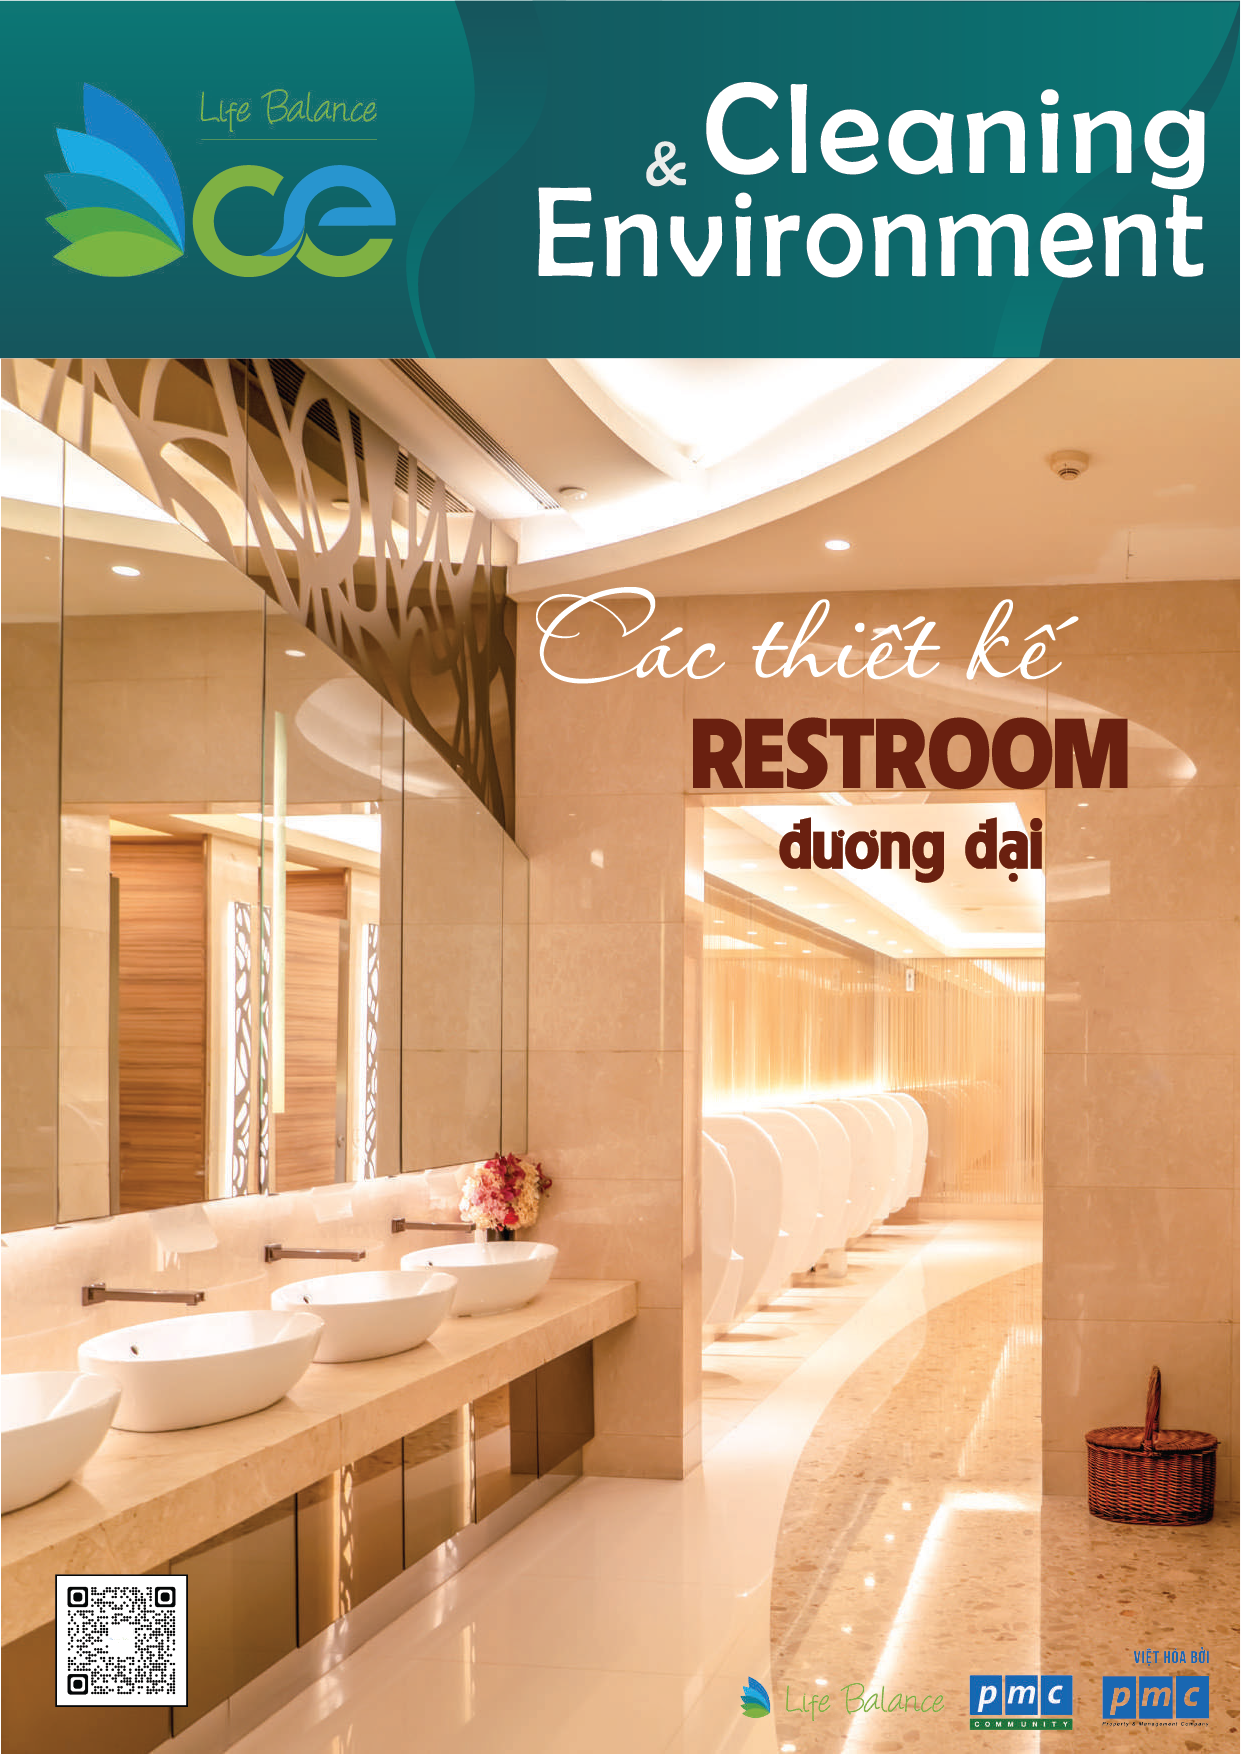 Tạp chí CLEANING & ENVIRONMENT | Life Balance – No.20 Các thiết kế Restroom đương đại